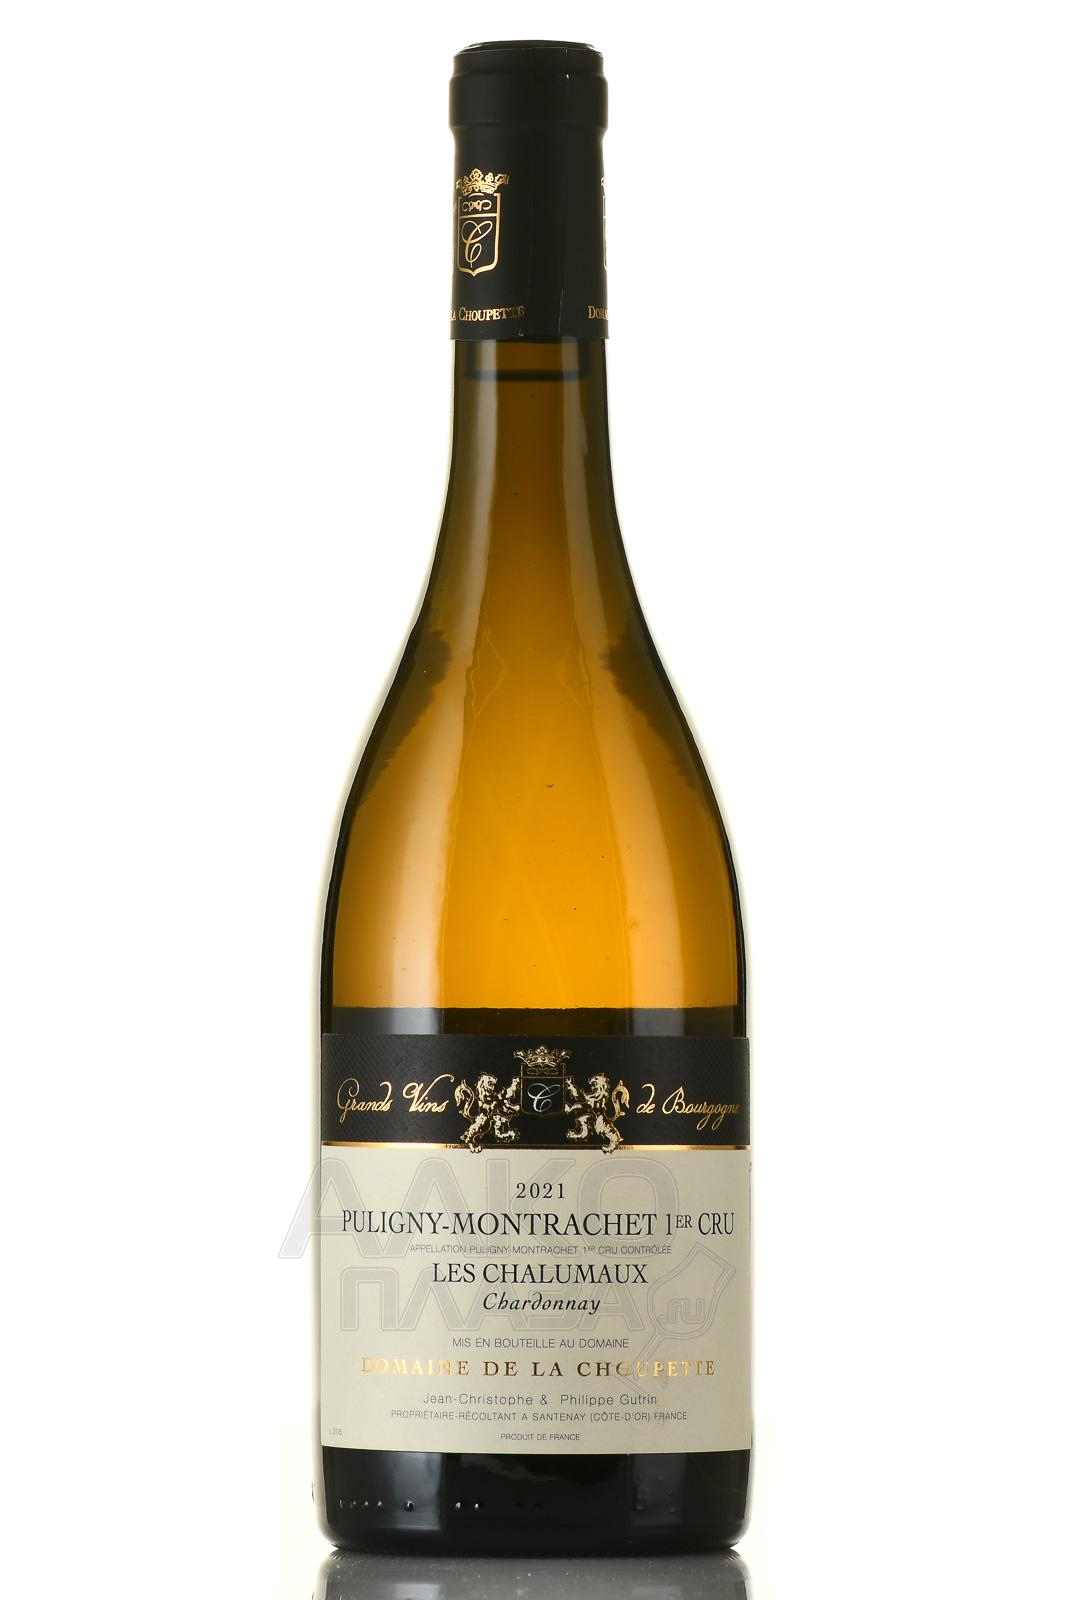 Domaine de la Choupette Puligny-Montrachet 1er Cru Les Chalumeaux - вино Домен де ля Шупетт Пюлиньи-Монраше Премье Крю Ле Шалюмо 0.75 л белое сухое